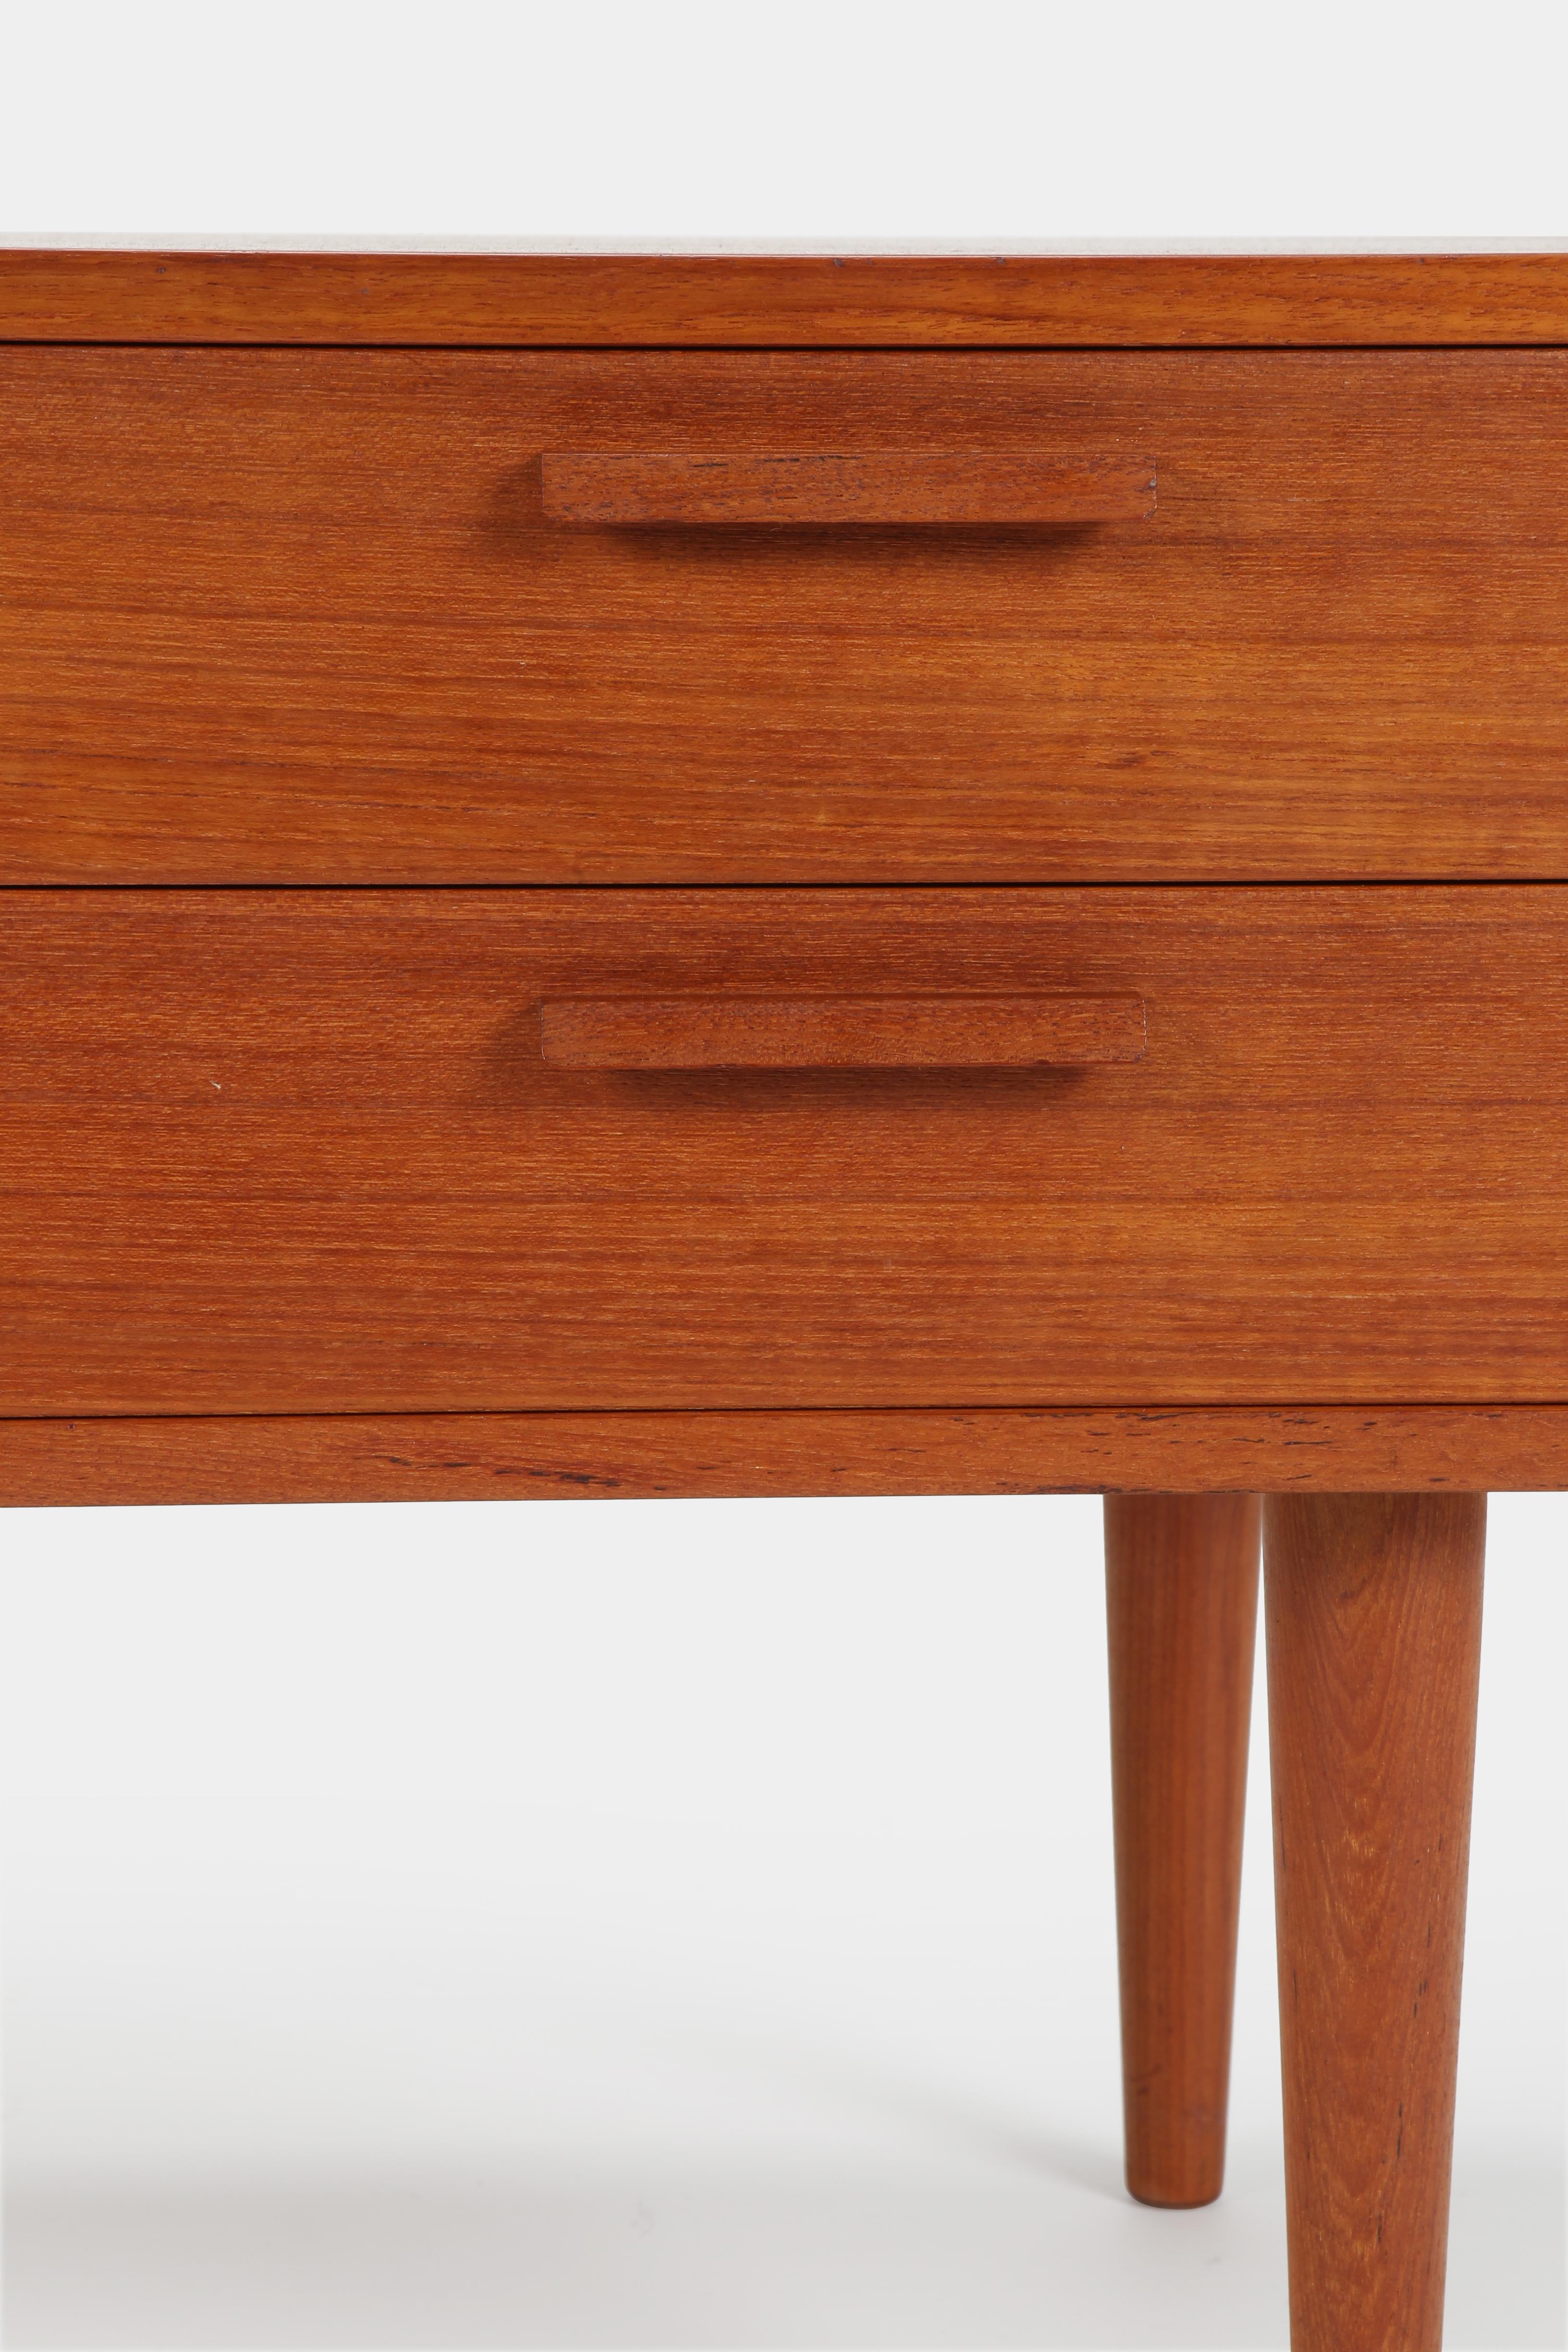 Kai Kristiansen Small Teak Dresser Midcentury modern Danish Design, 1960s For Sale 5